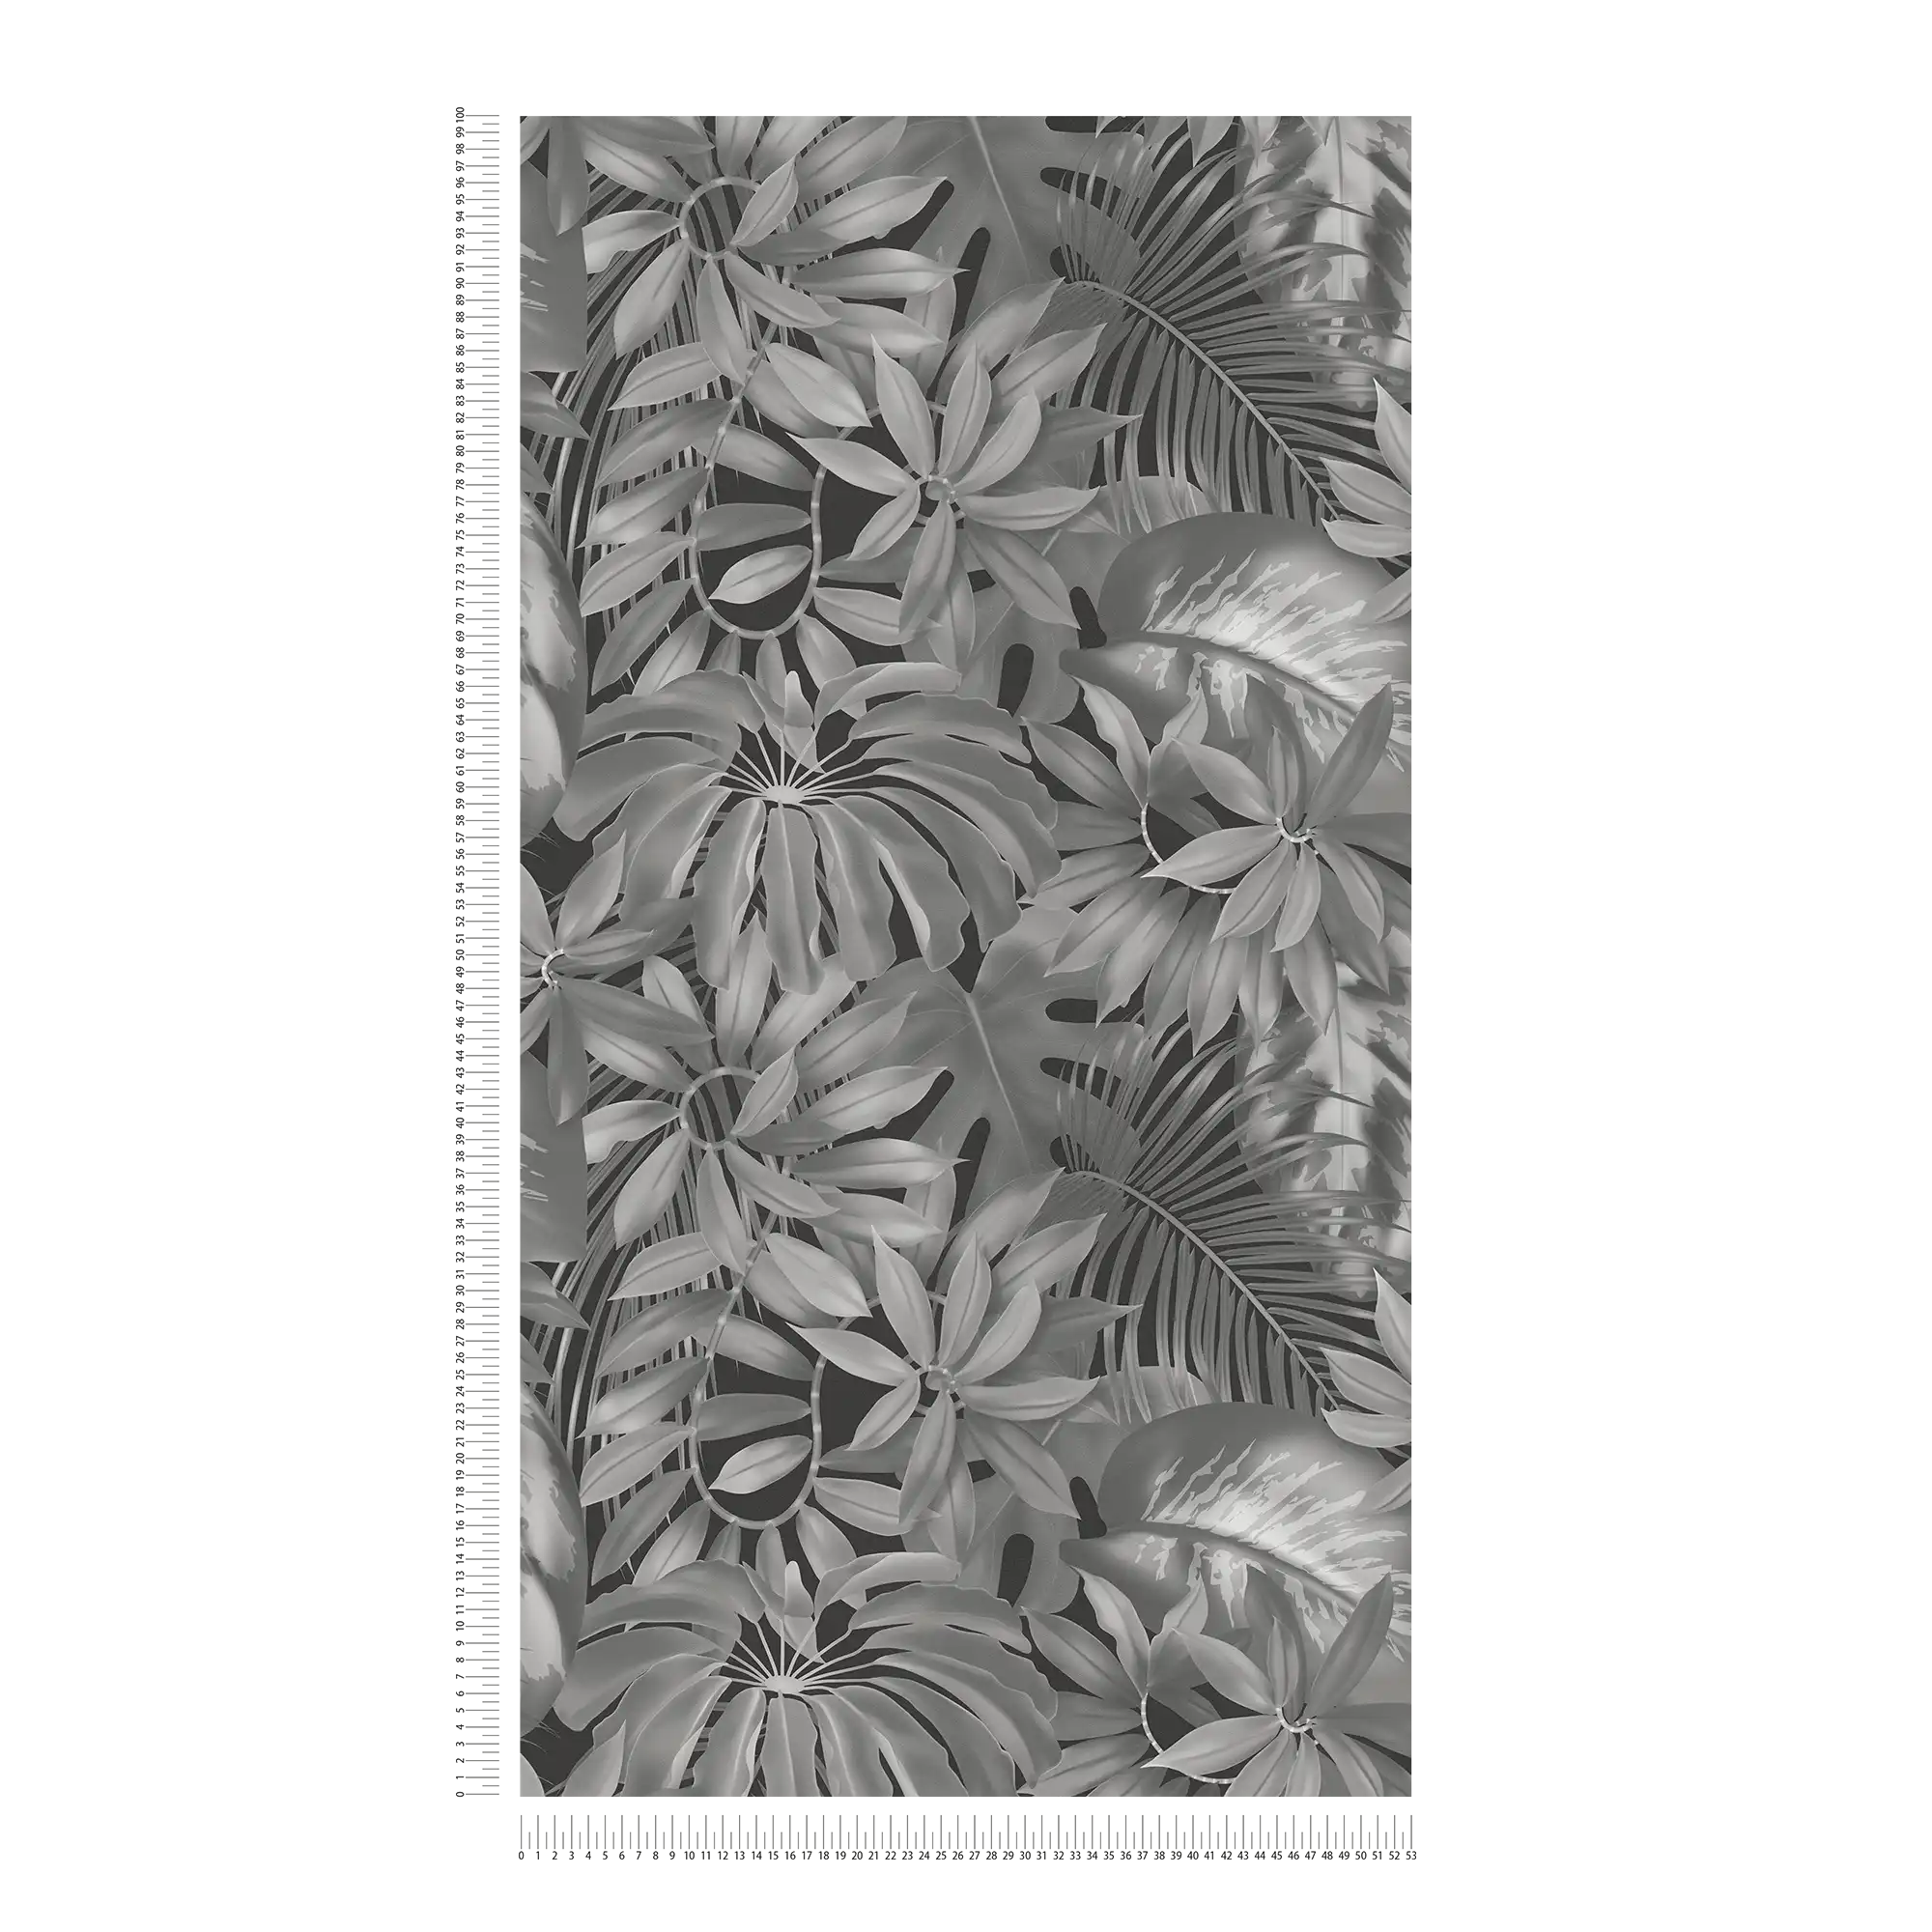             Blätter-Tapete Dschungel Muster – Grau, Schwarz
        